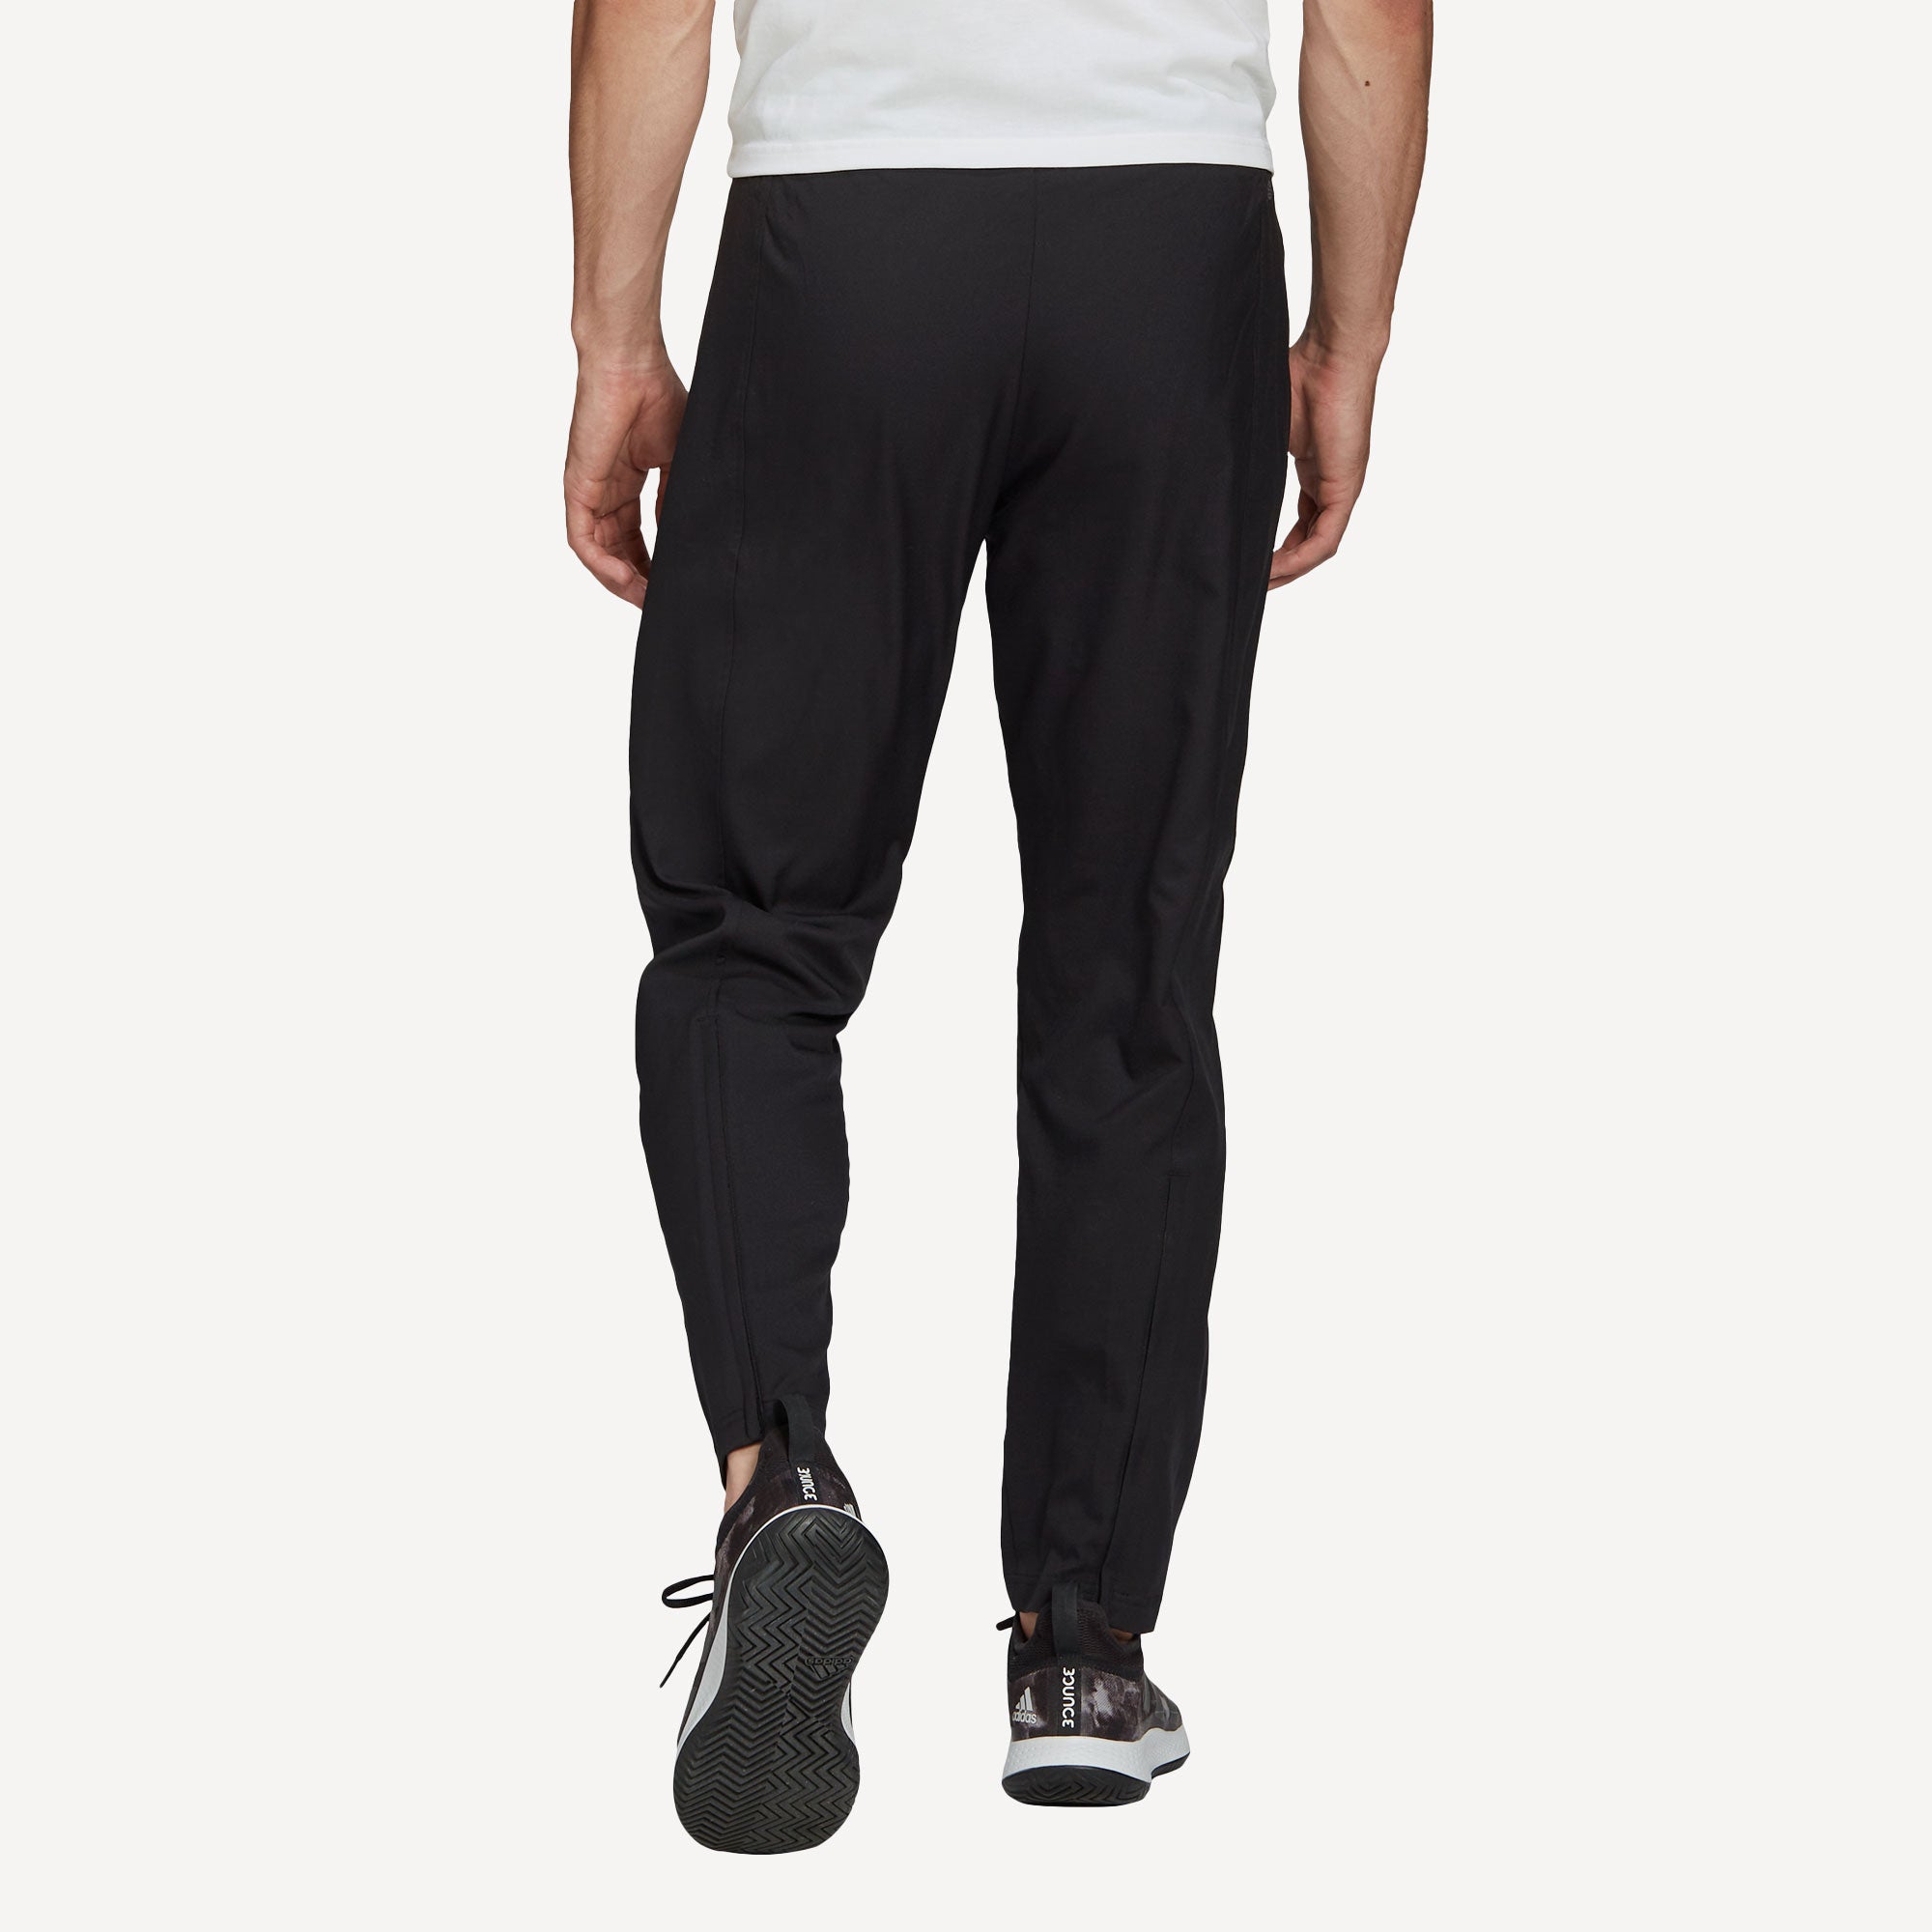 adidas Melbourne Men's Stretch Woven Tennis Pants Black (2)